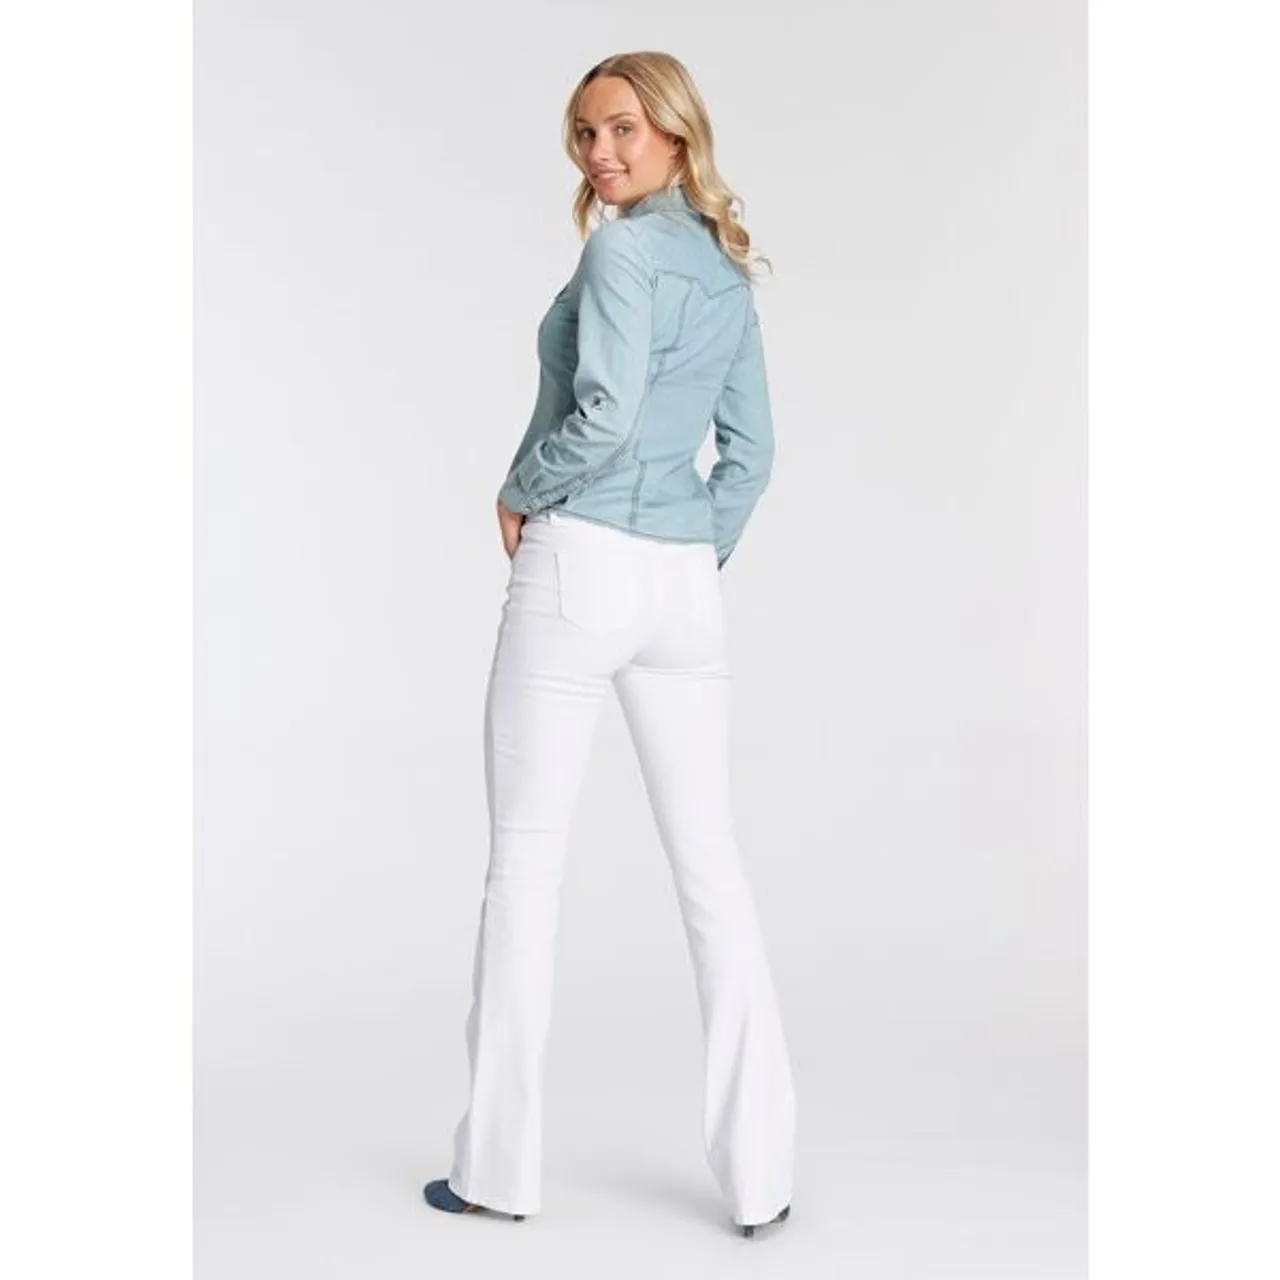 Bootcut-Jeans ARIZONA "mit Keileinsätzen" Gr. 20, K + L Gr, weiß (white) Damen Jeans Bootcut